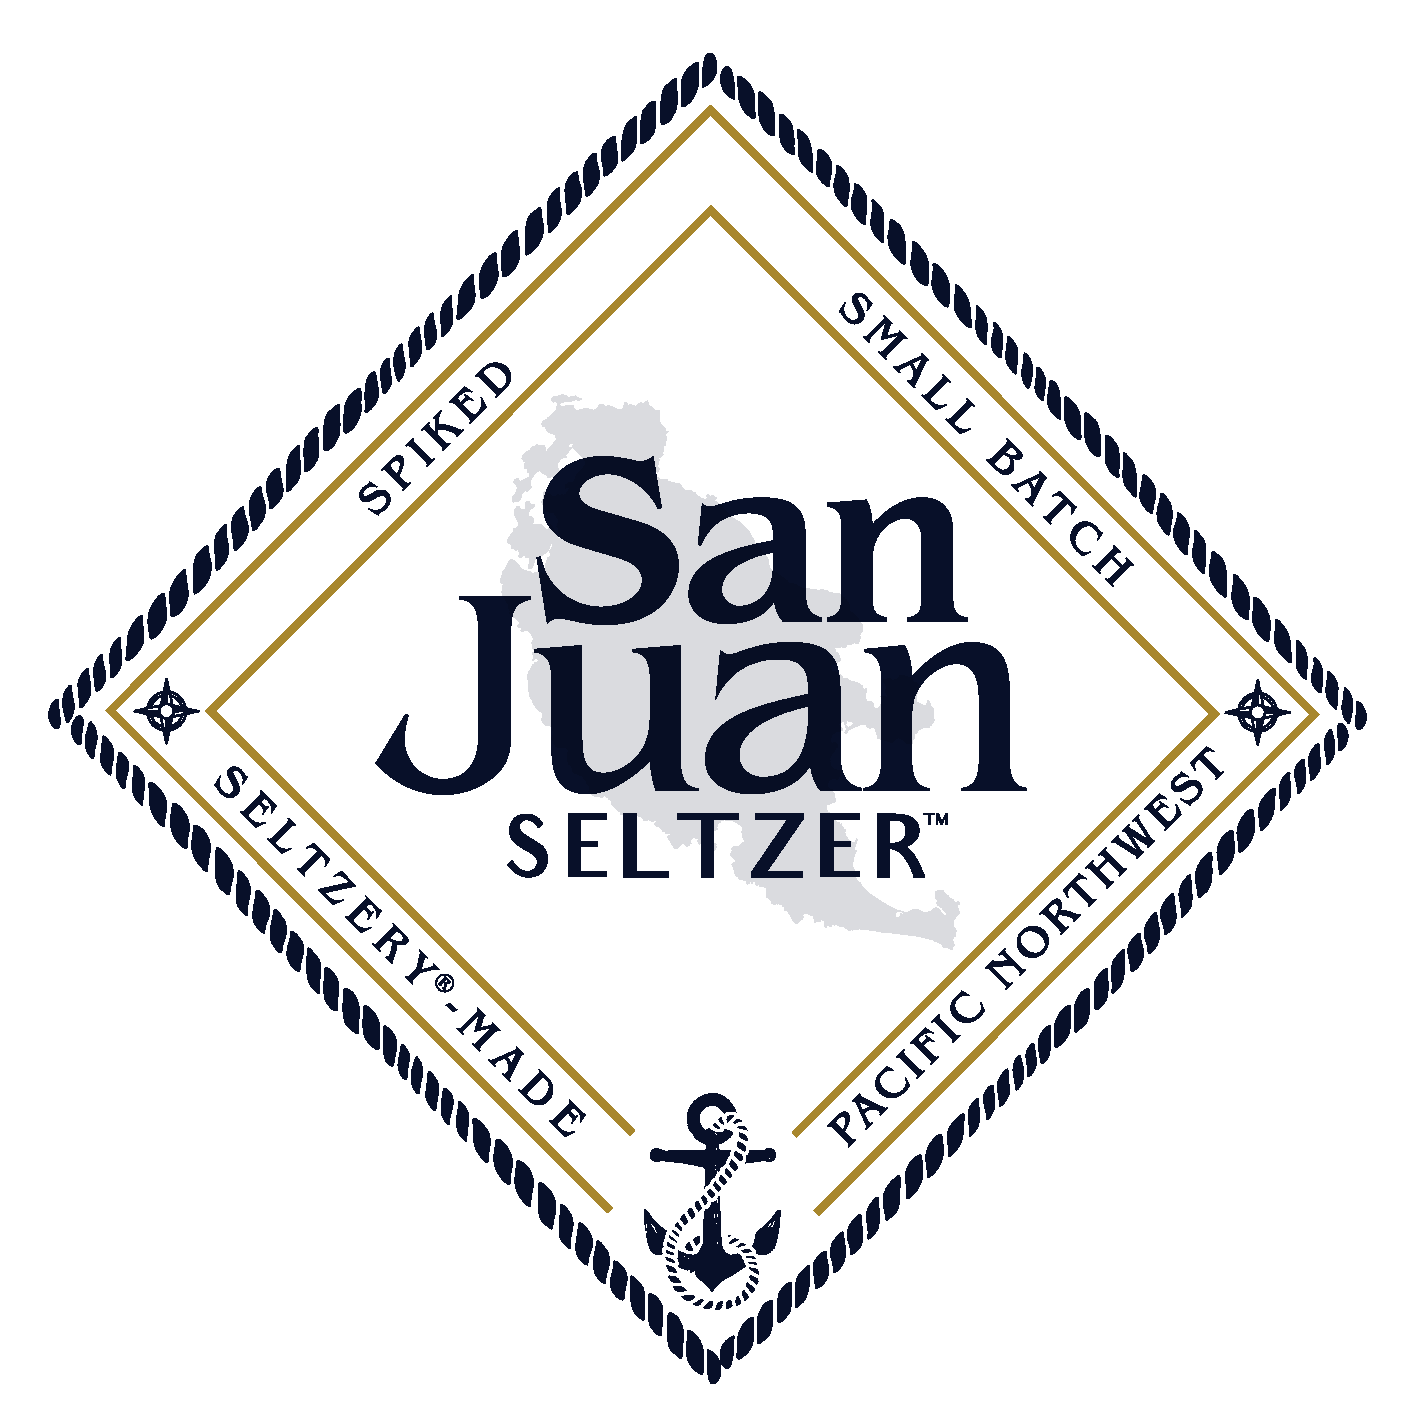 San Juan Selzer